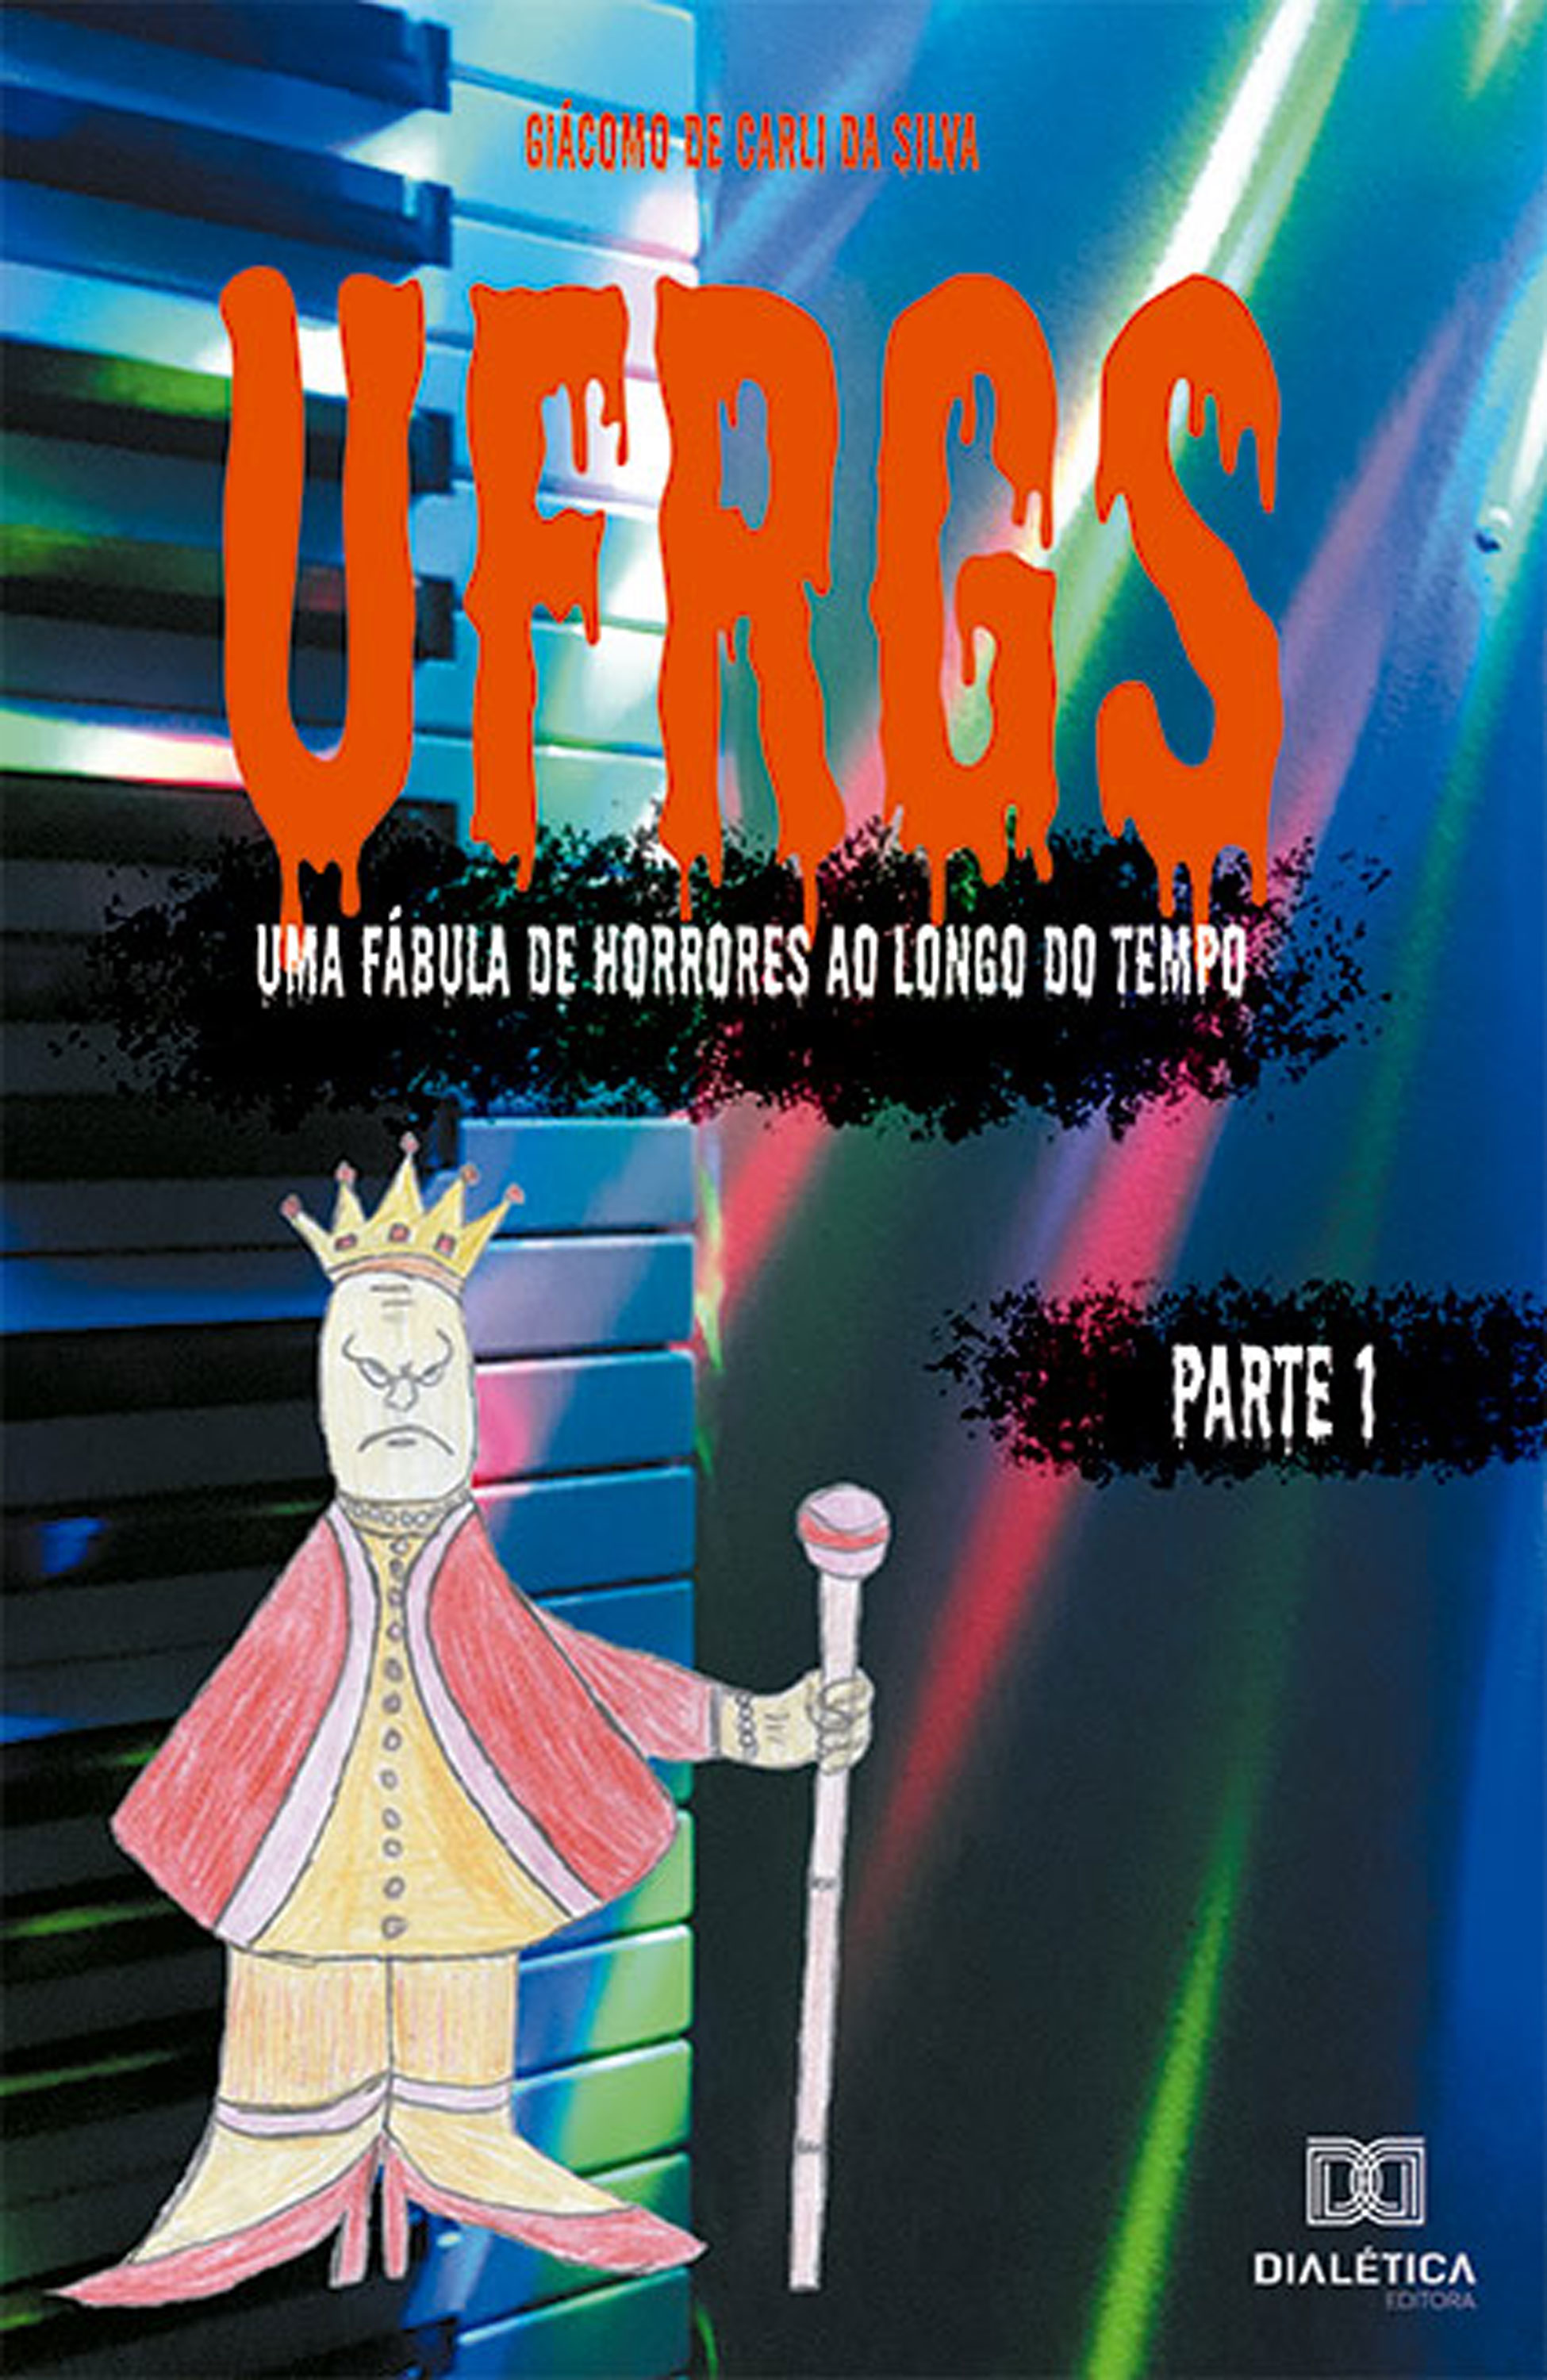 UFRGS - Volume 1